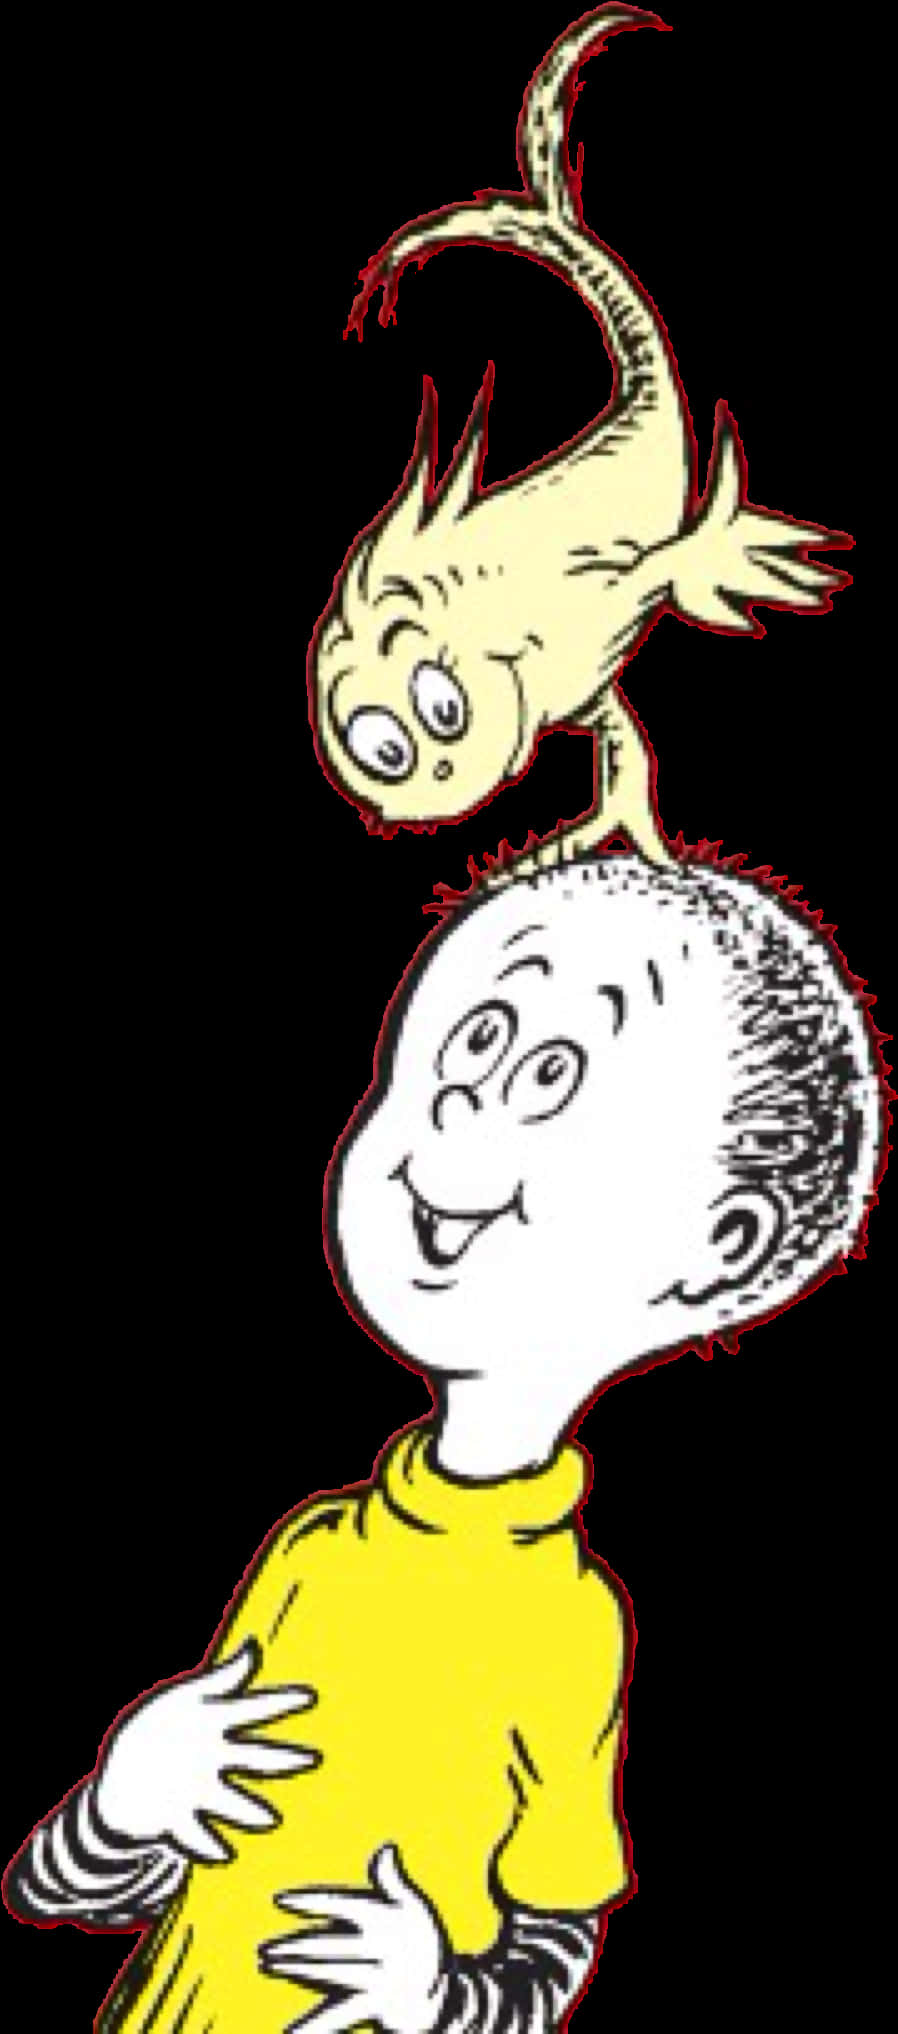 A Cartoon Of A Bird Standing On A Head Of A Boy